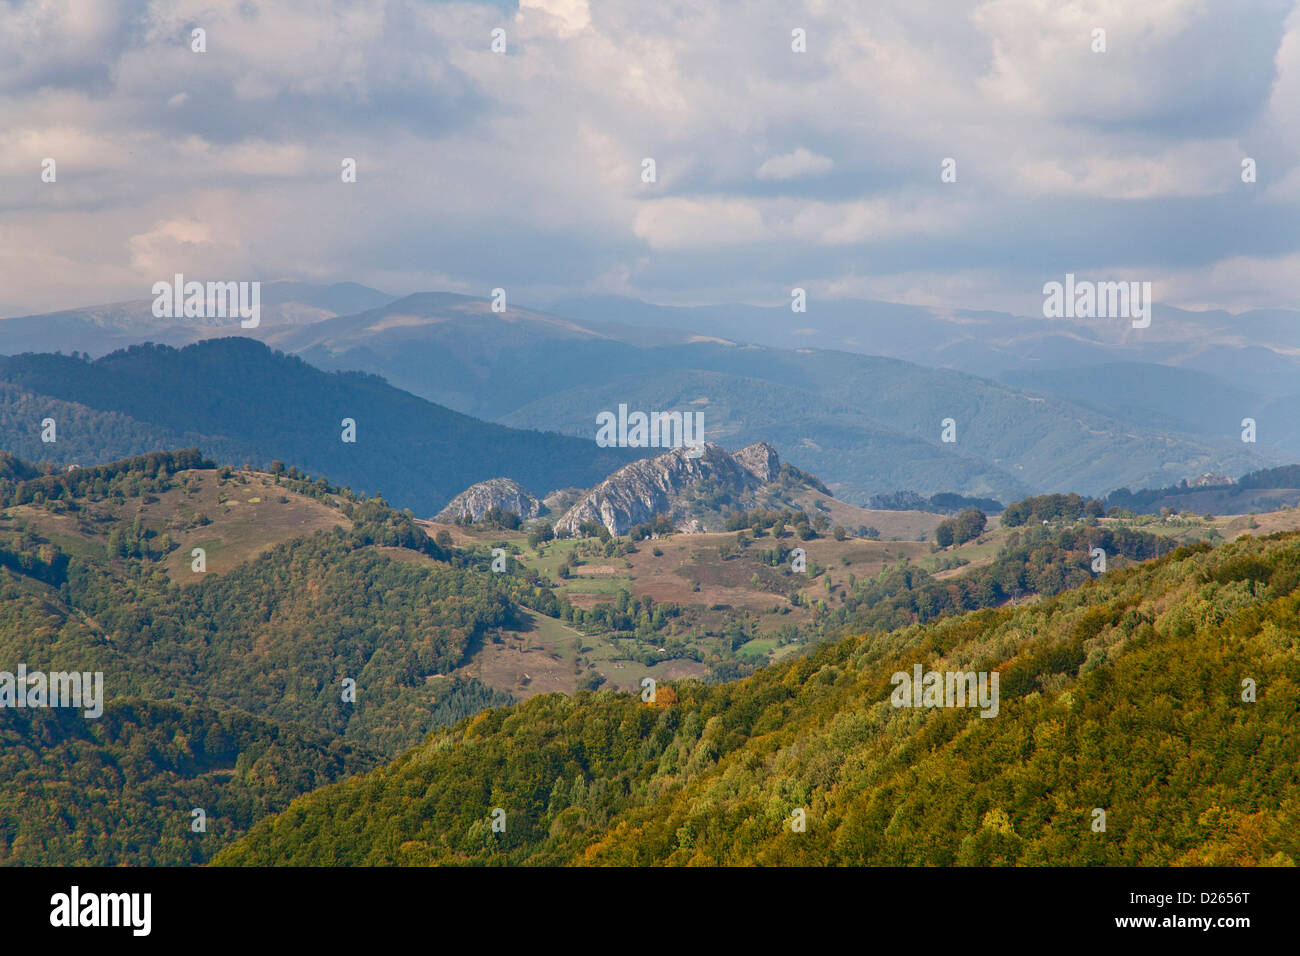 Les montagnes des Carpates, Cerna Valley près de Baile Herculane. L'Europe, l'Europe de l'Est, Roumanie, Septembre Banque D'Images